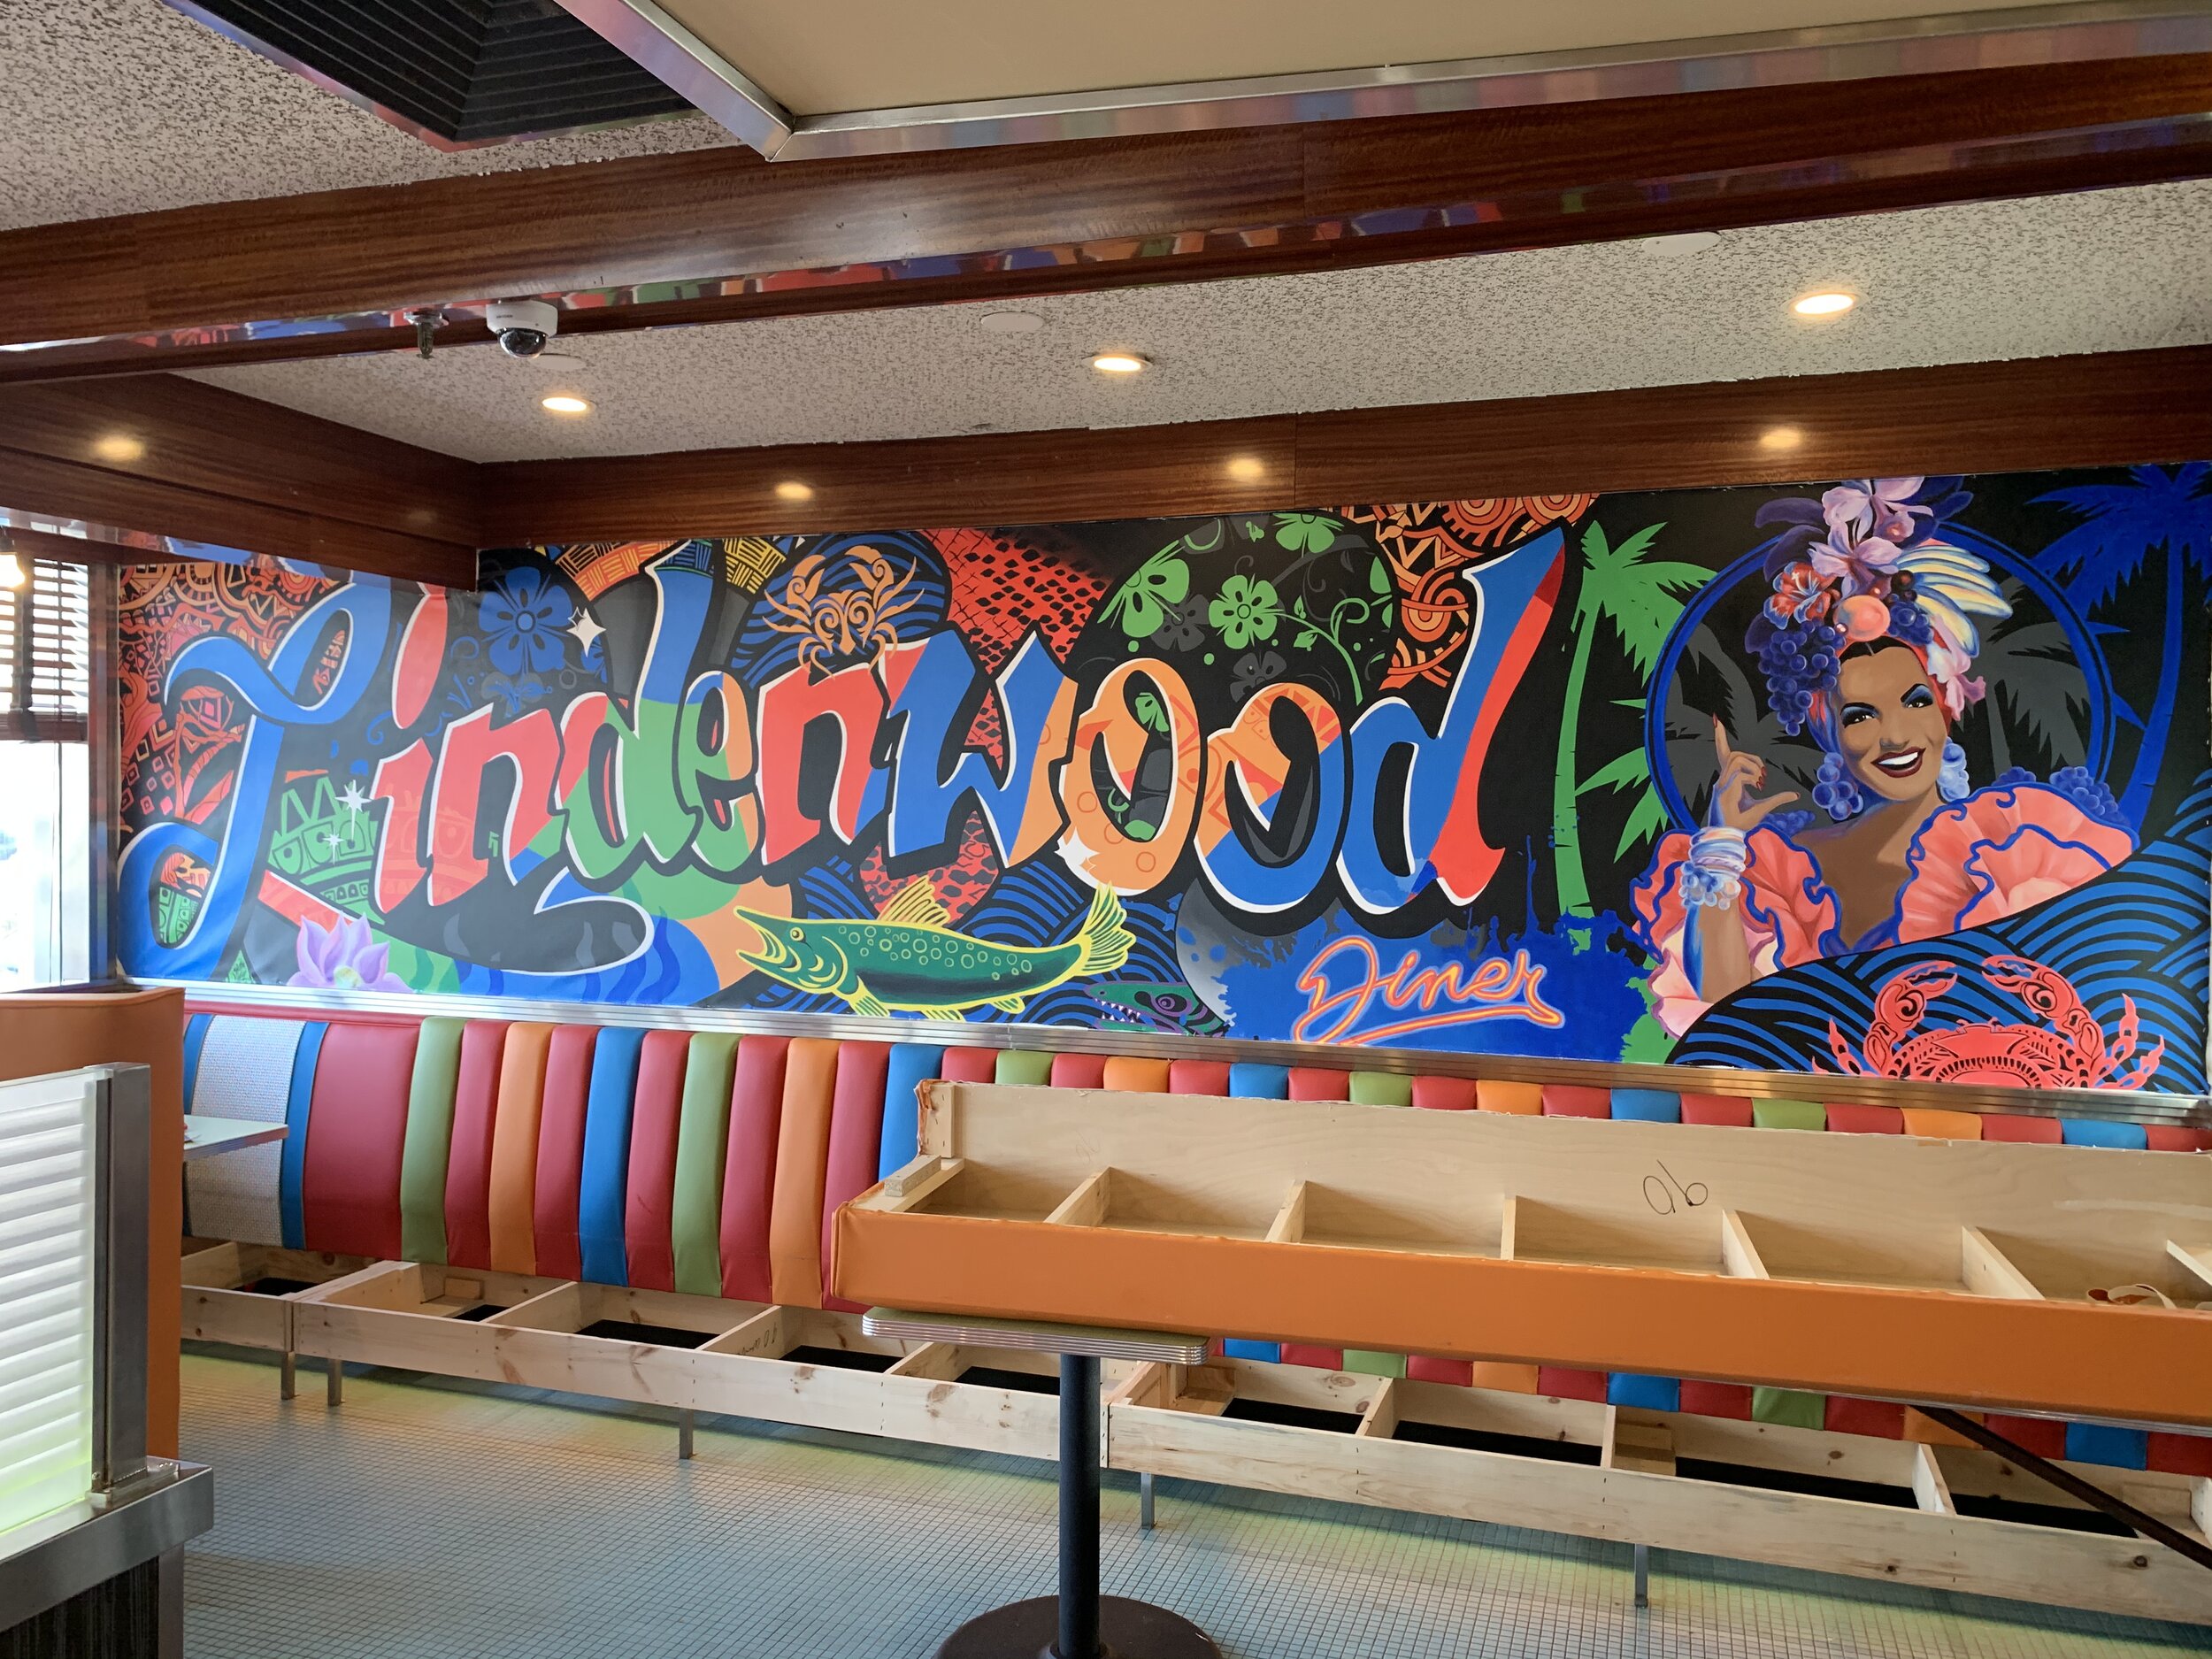 Lindenwood diner mural 1.jpeg